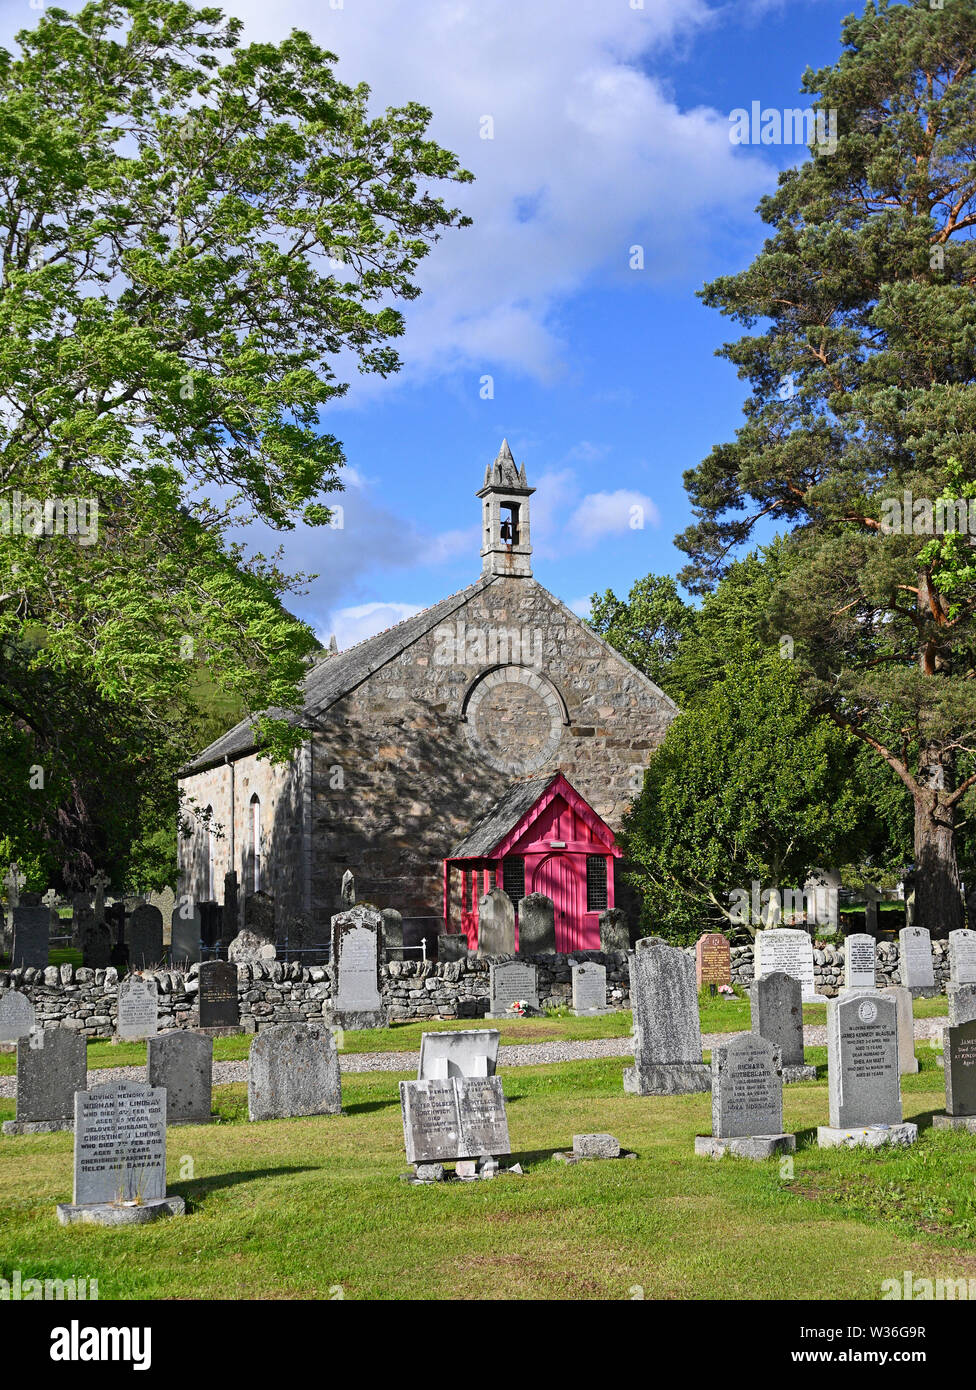 L'ancienne église, Kinloch Rannoch. Perth et Kinross, Ecosse, Royaume-Uni, Europe. Banque D'Images